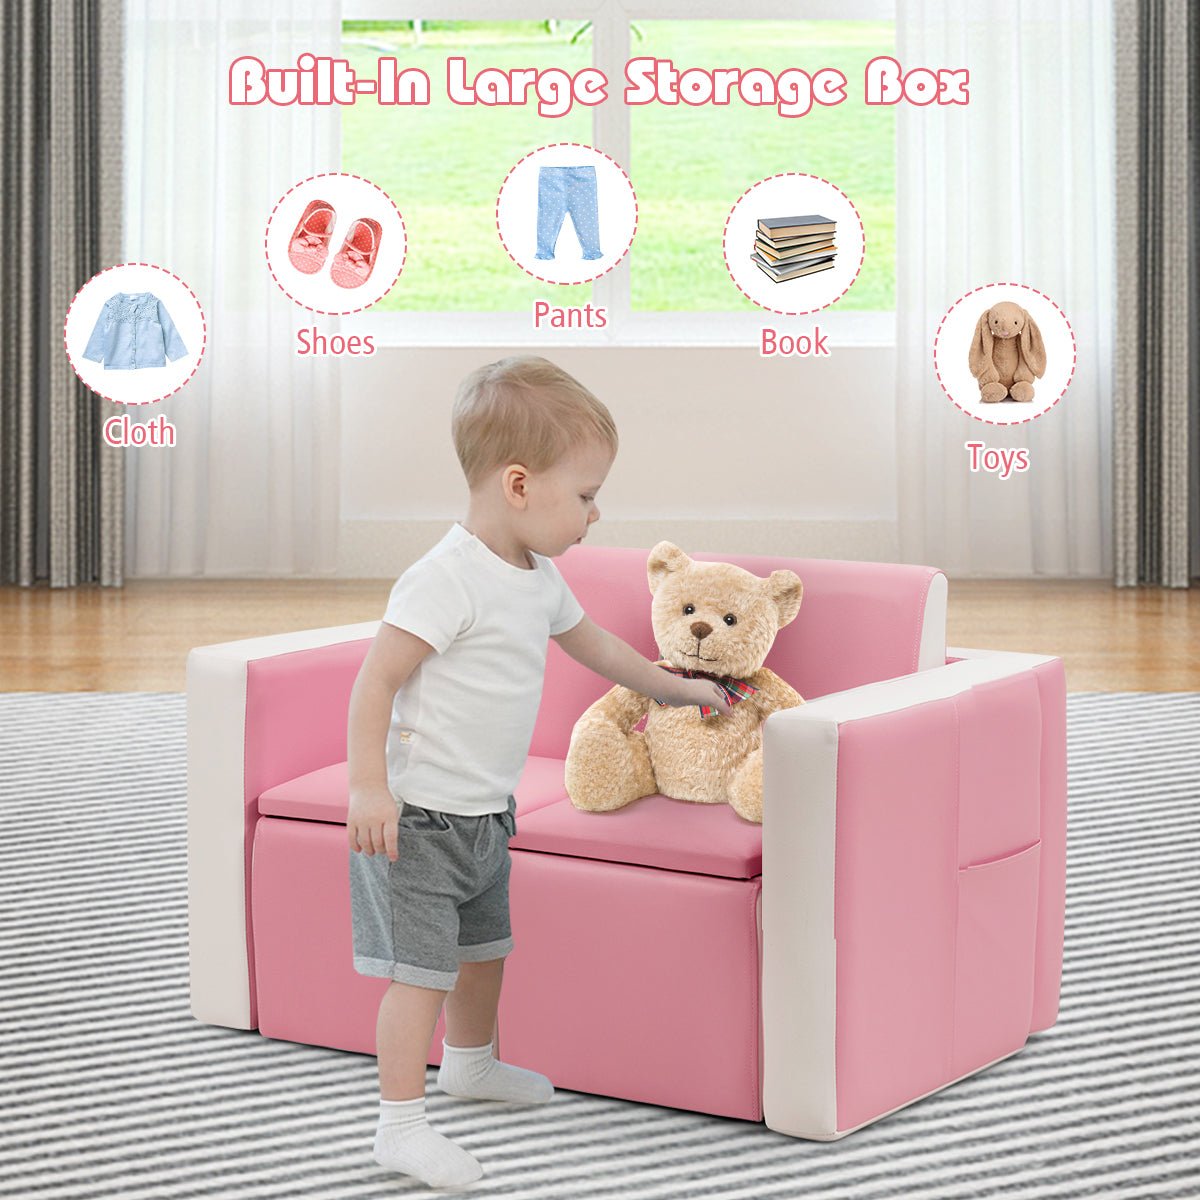 2-in-1 Children's Sofa with Hidden Storage - Play, Sit, Organize